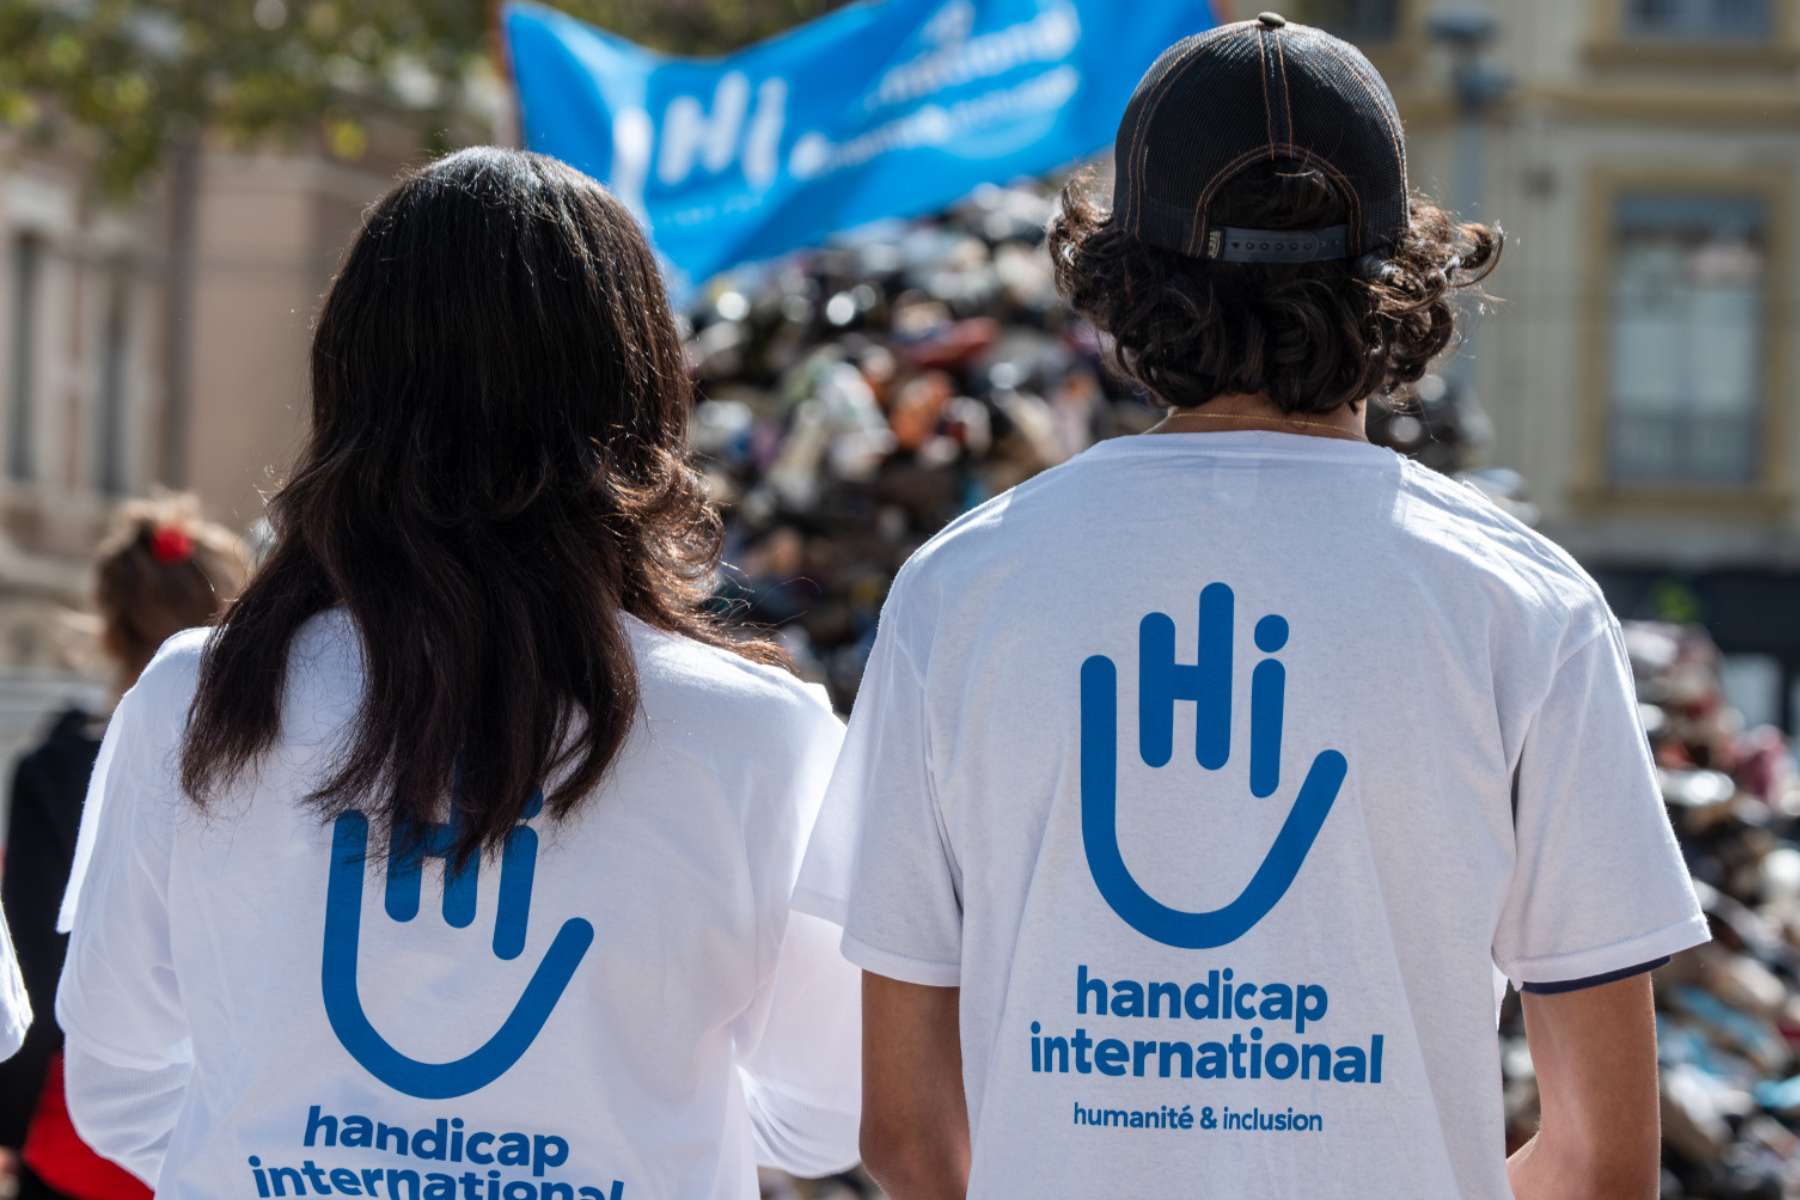 Zwei Hi-Mitarbeiter*innen von hinten. Sie tragen beide das gleiche weiße T-Shirt mit einem großen Handicap-International-Logo auf dem Rücken.